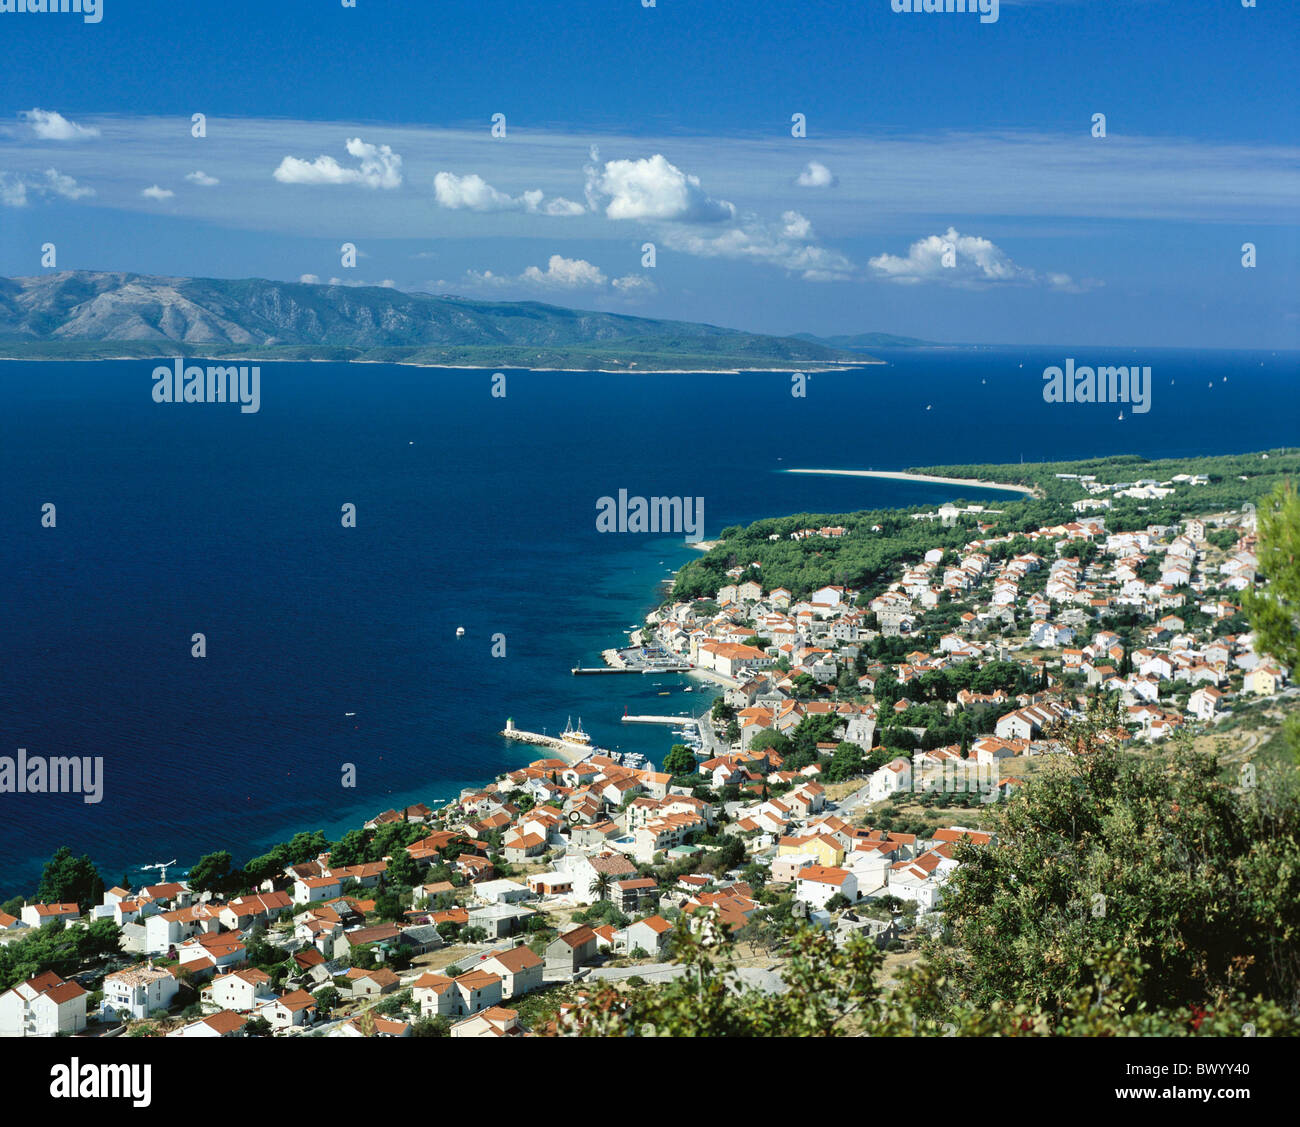 Bol-Dalmatien Dorf Hafen Port Insel Insel Brac Kroatien Küste Landschaft Meer Stadt City Überblick Stockfoto